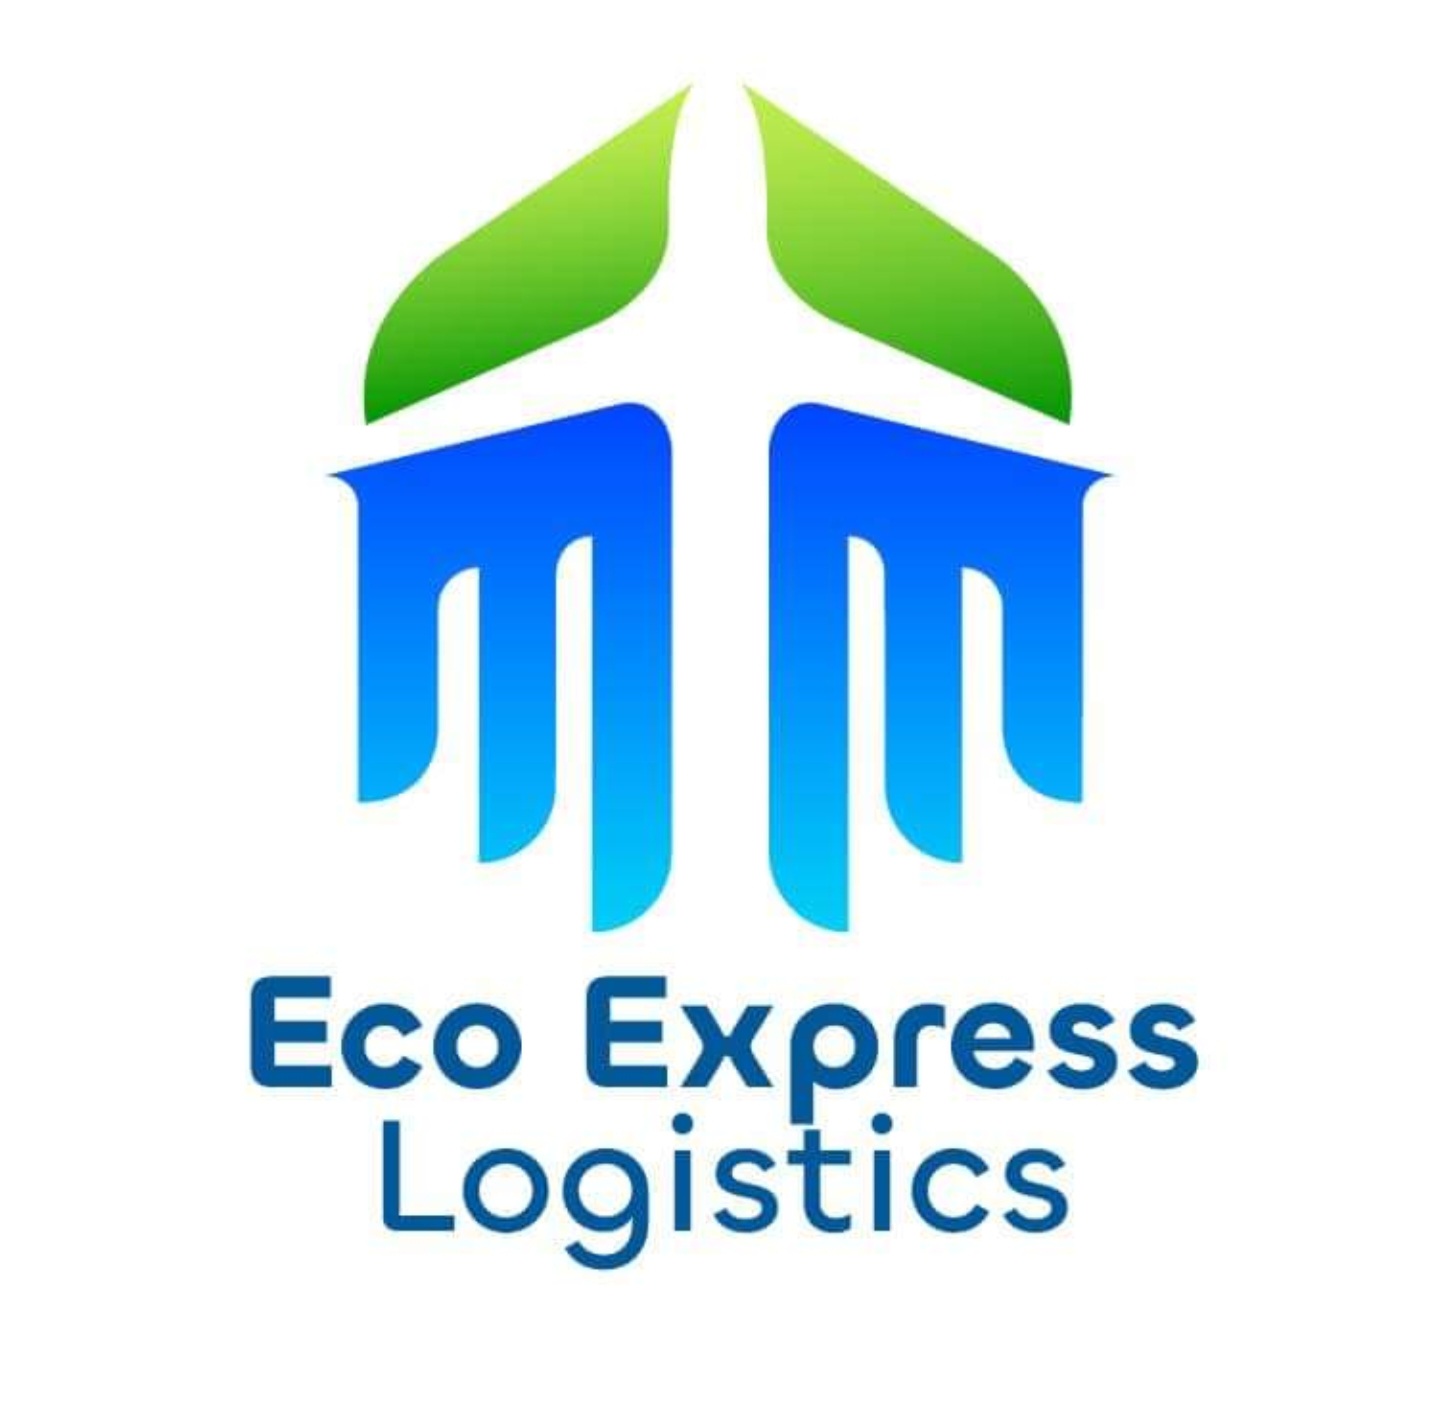 EcoExpress Logistics